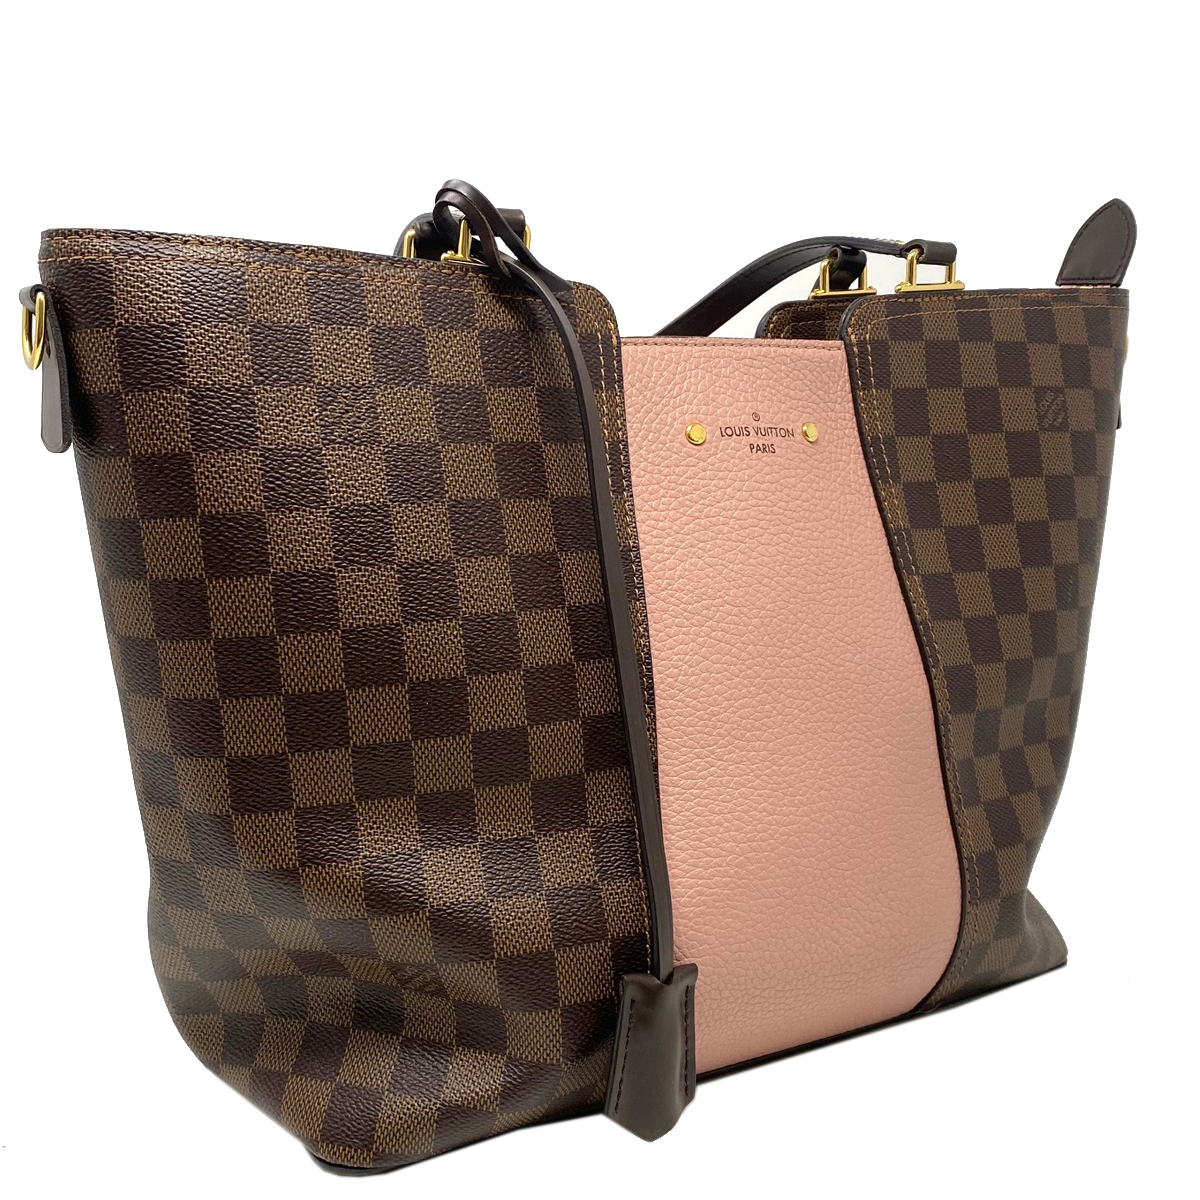 Sell Designer Handbags for Cash Online - Boca Raton Pawn